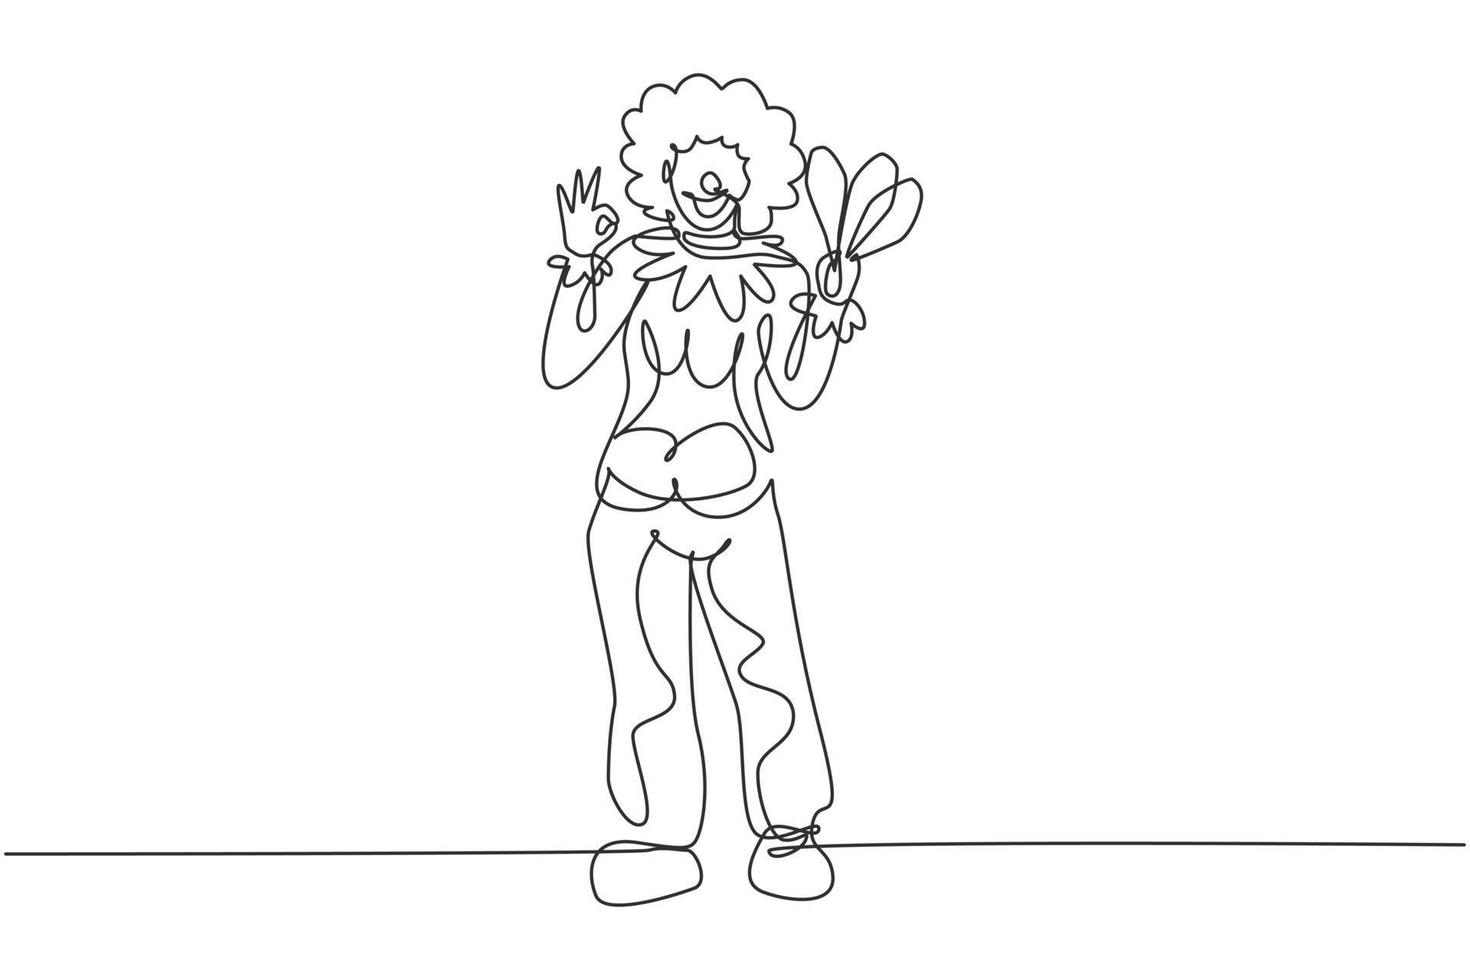 kontinuerlig enradsteckning kvinnlig clown står med gest okej bär peruk och clownkostym redo att underhålla publiken i cirkusarenan. enkel linje rita design vektor grafisk illustration